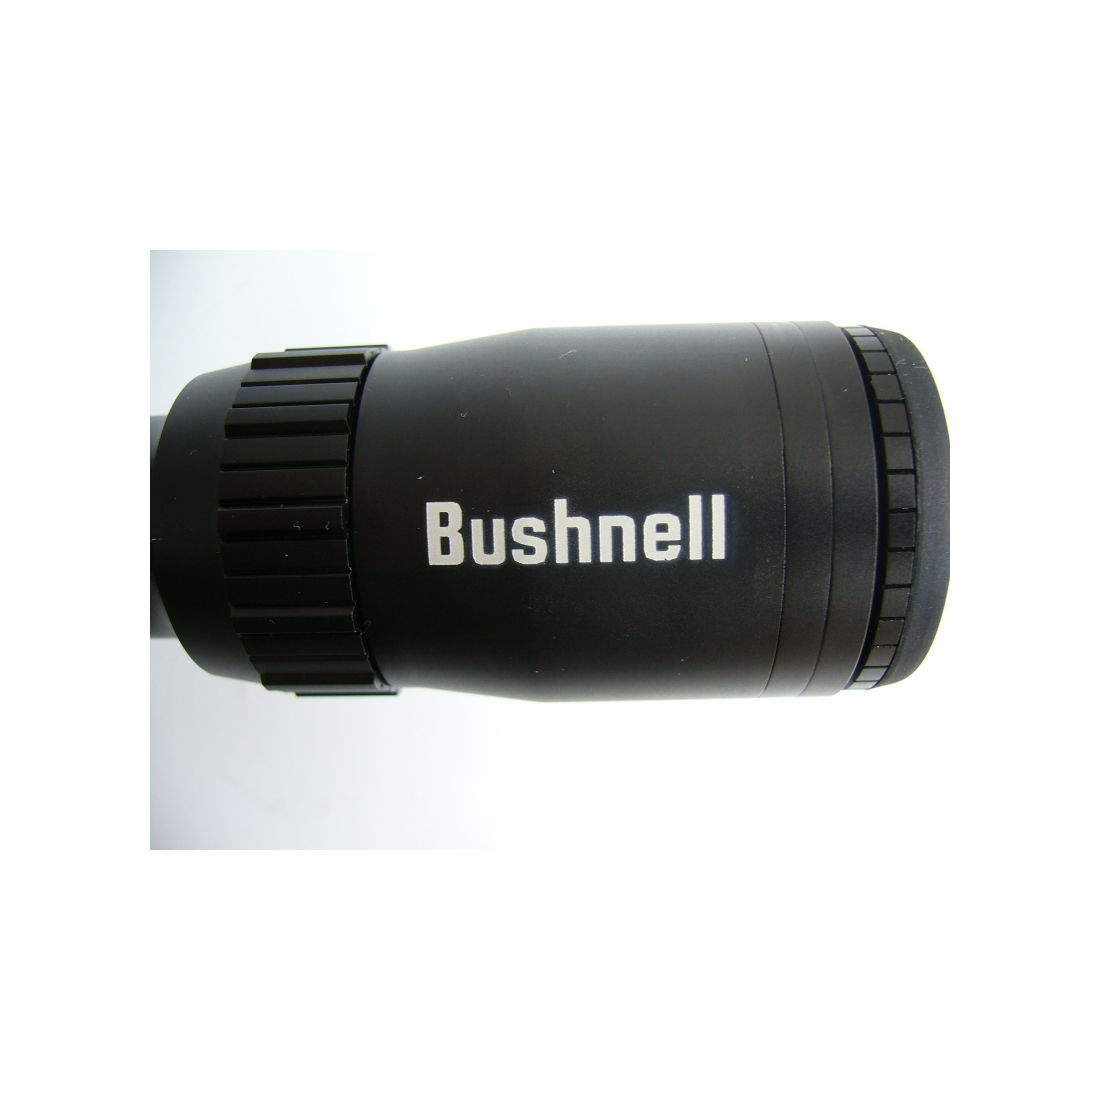 Bushnell Zielfernrohr 5-15x40 mit Mil-Dot Absehen. Eine erstklassige Leistung für kleines Geld.